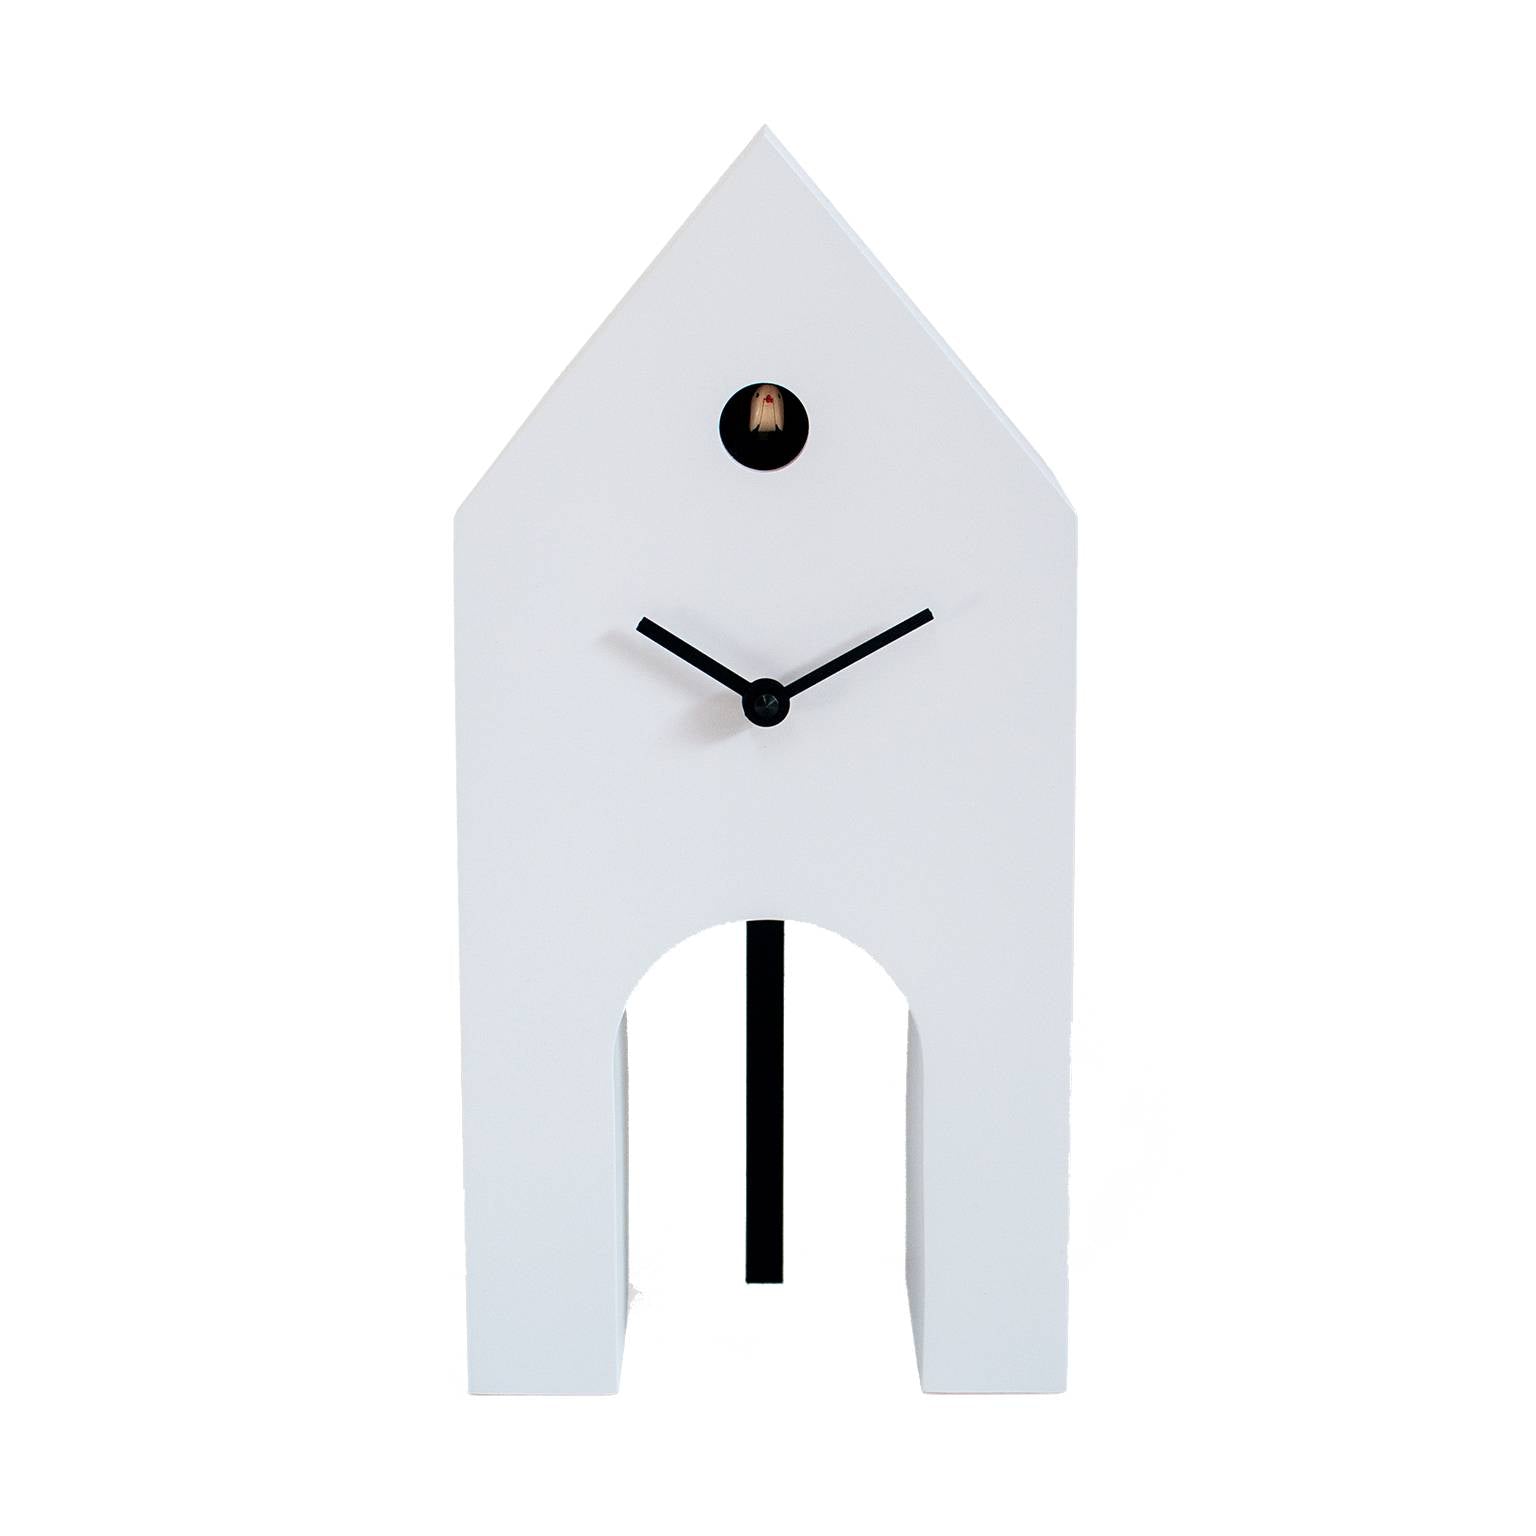 Campanile Cuckoo Clock by Progetti on Luxxdesign.com